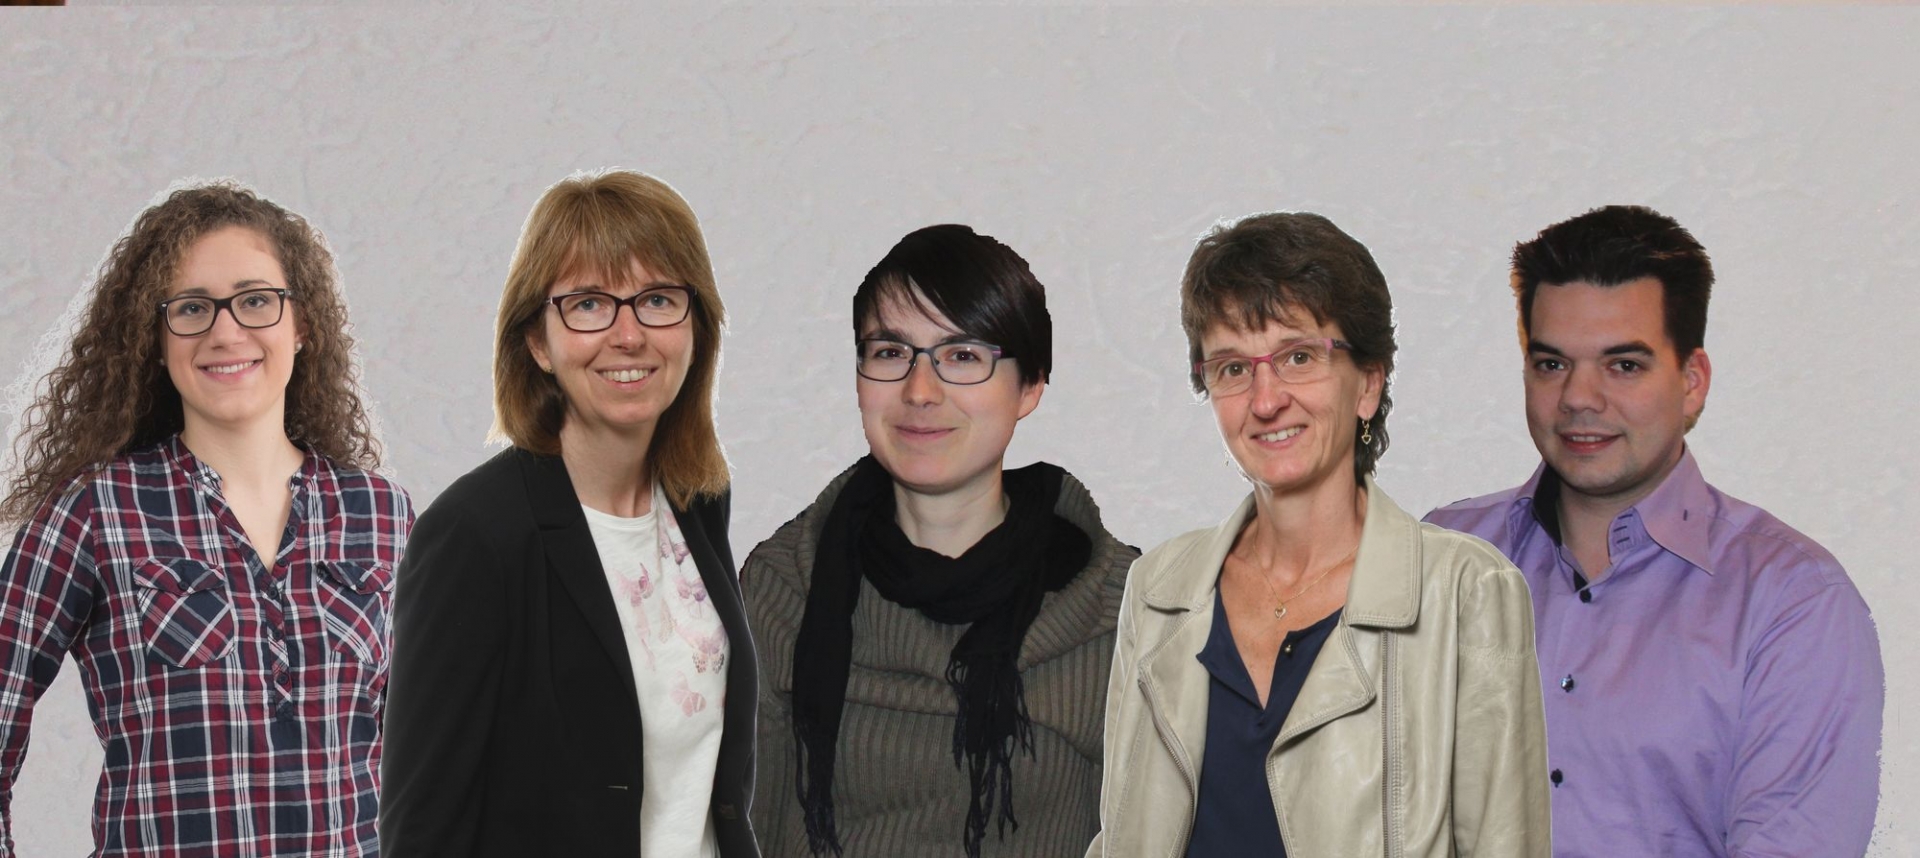 Hélène Gonnet, Carole Morisod, Tabea Grob, Nathalie Cretton et Fabrice Caillet-Bois prêts à faire campagne.